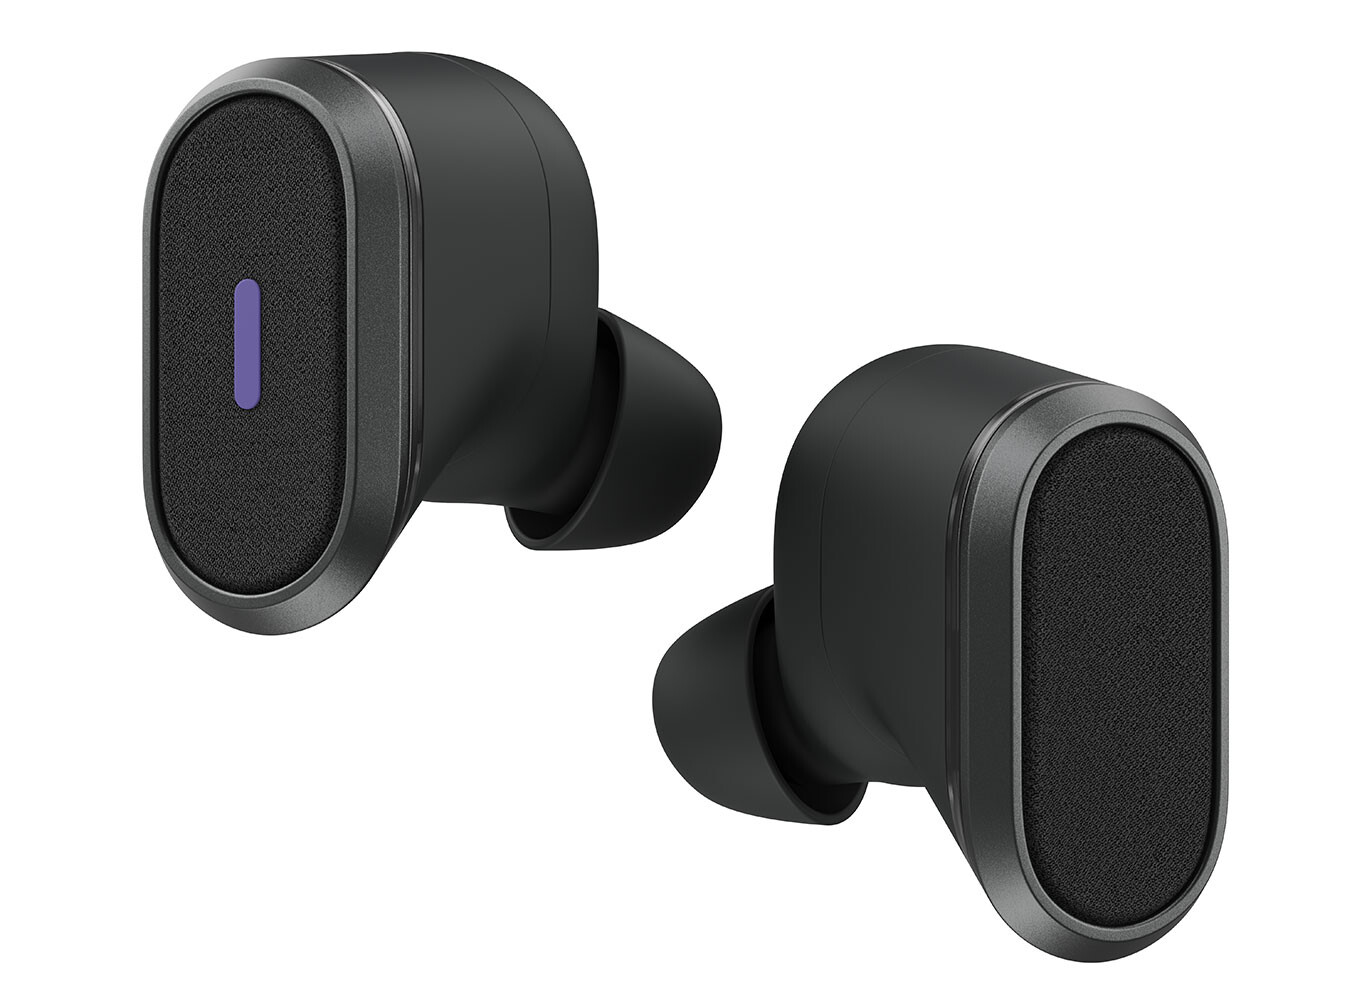 Logitech anuncia sus nuevos auriculares Zone True Wireless y Zone Wired Earbuds, los primeros auriculares que deben ser certificados